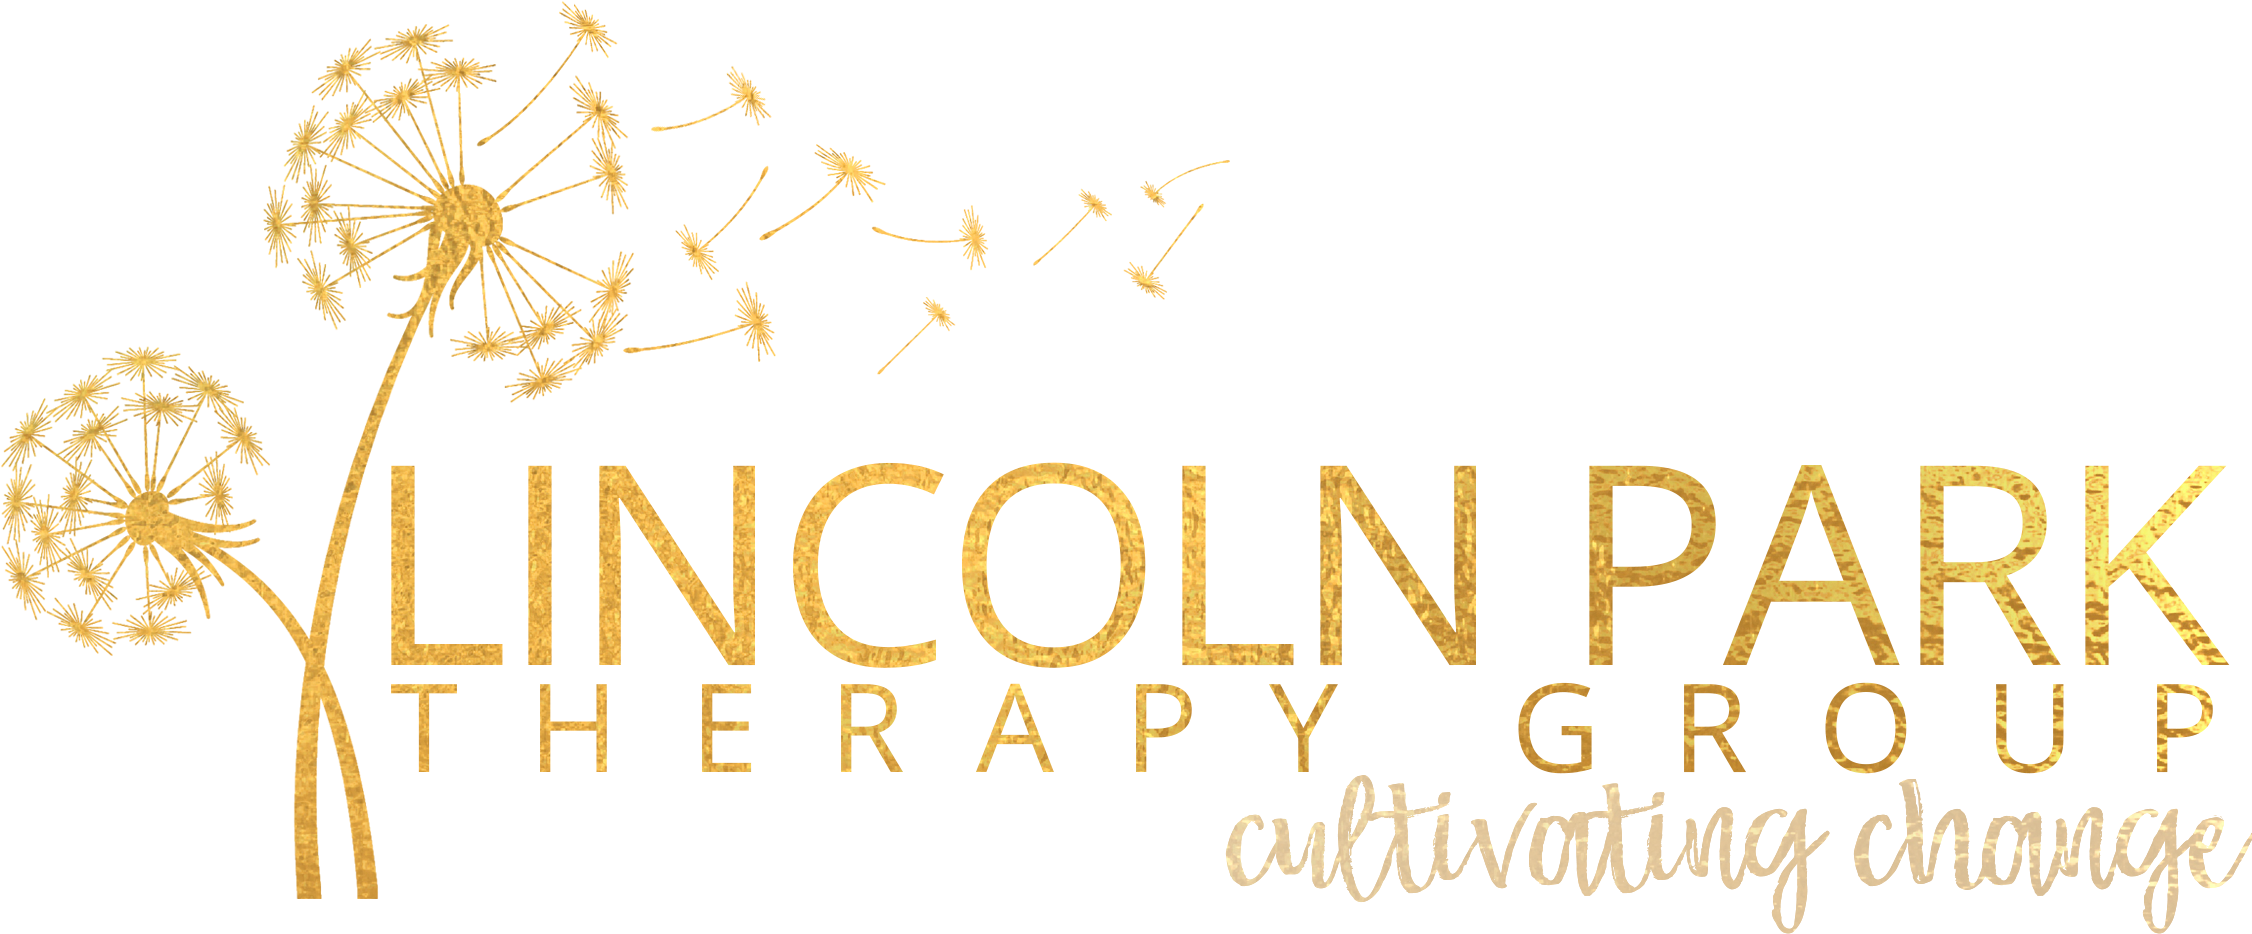 Lincoln Park Therapy Group - Lincoln Park Therapy Group--lincoln Park Location (2280x966), Png Download